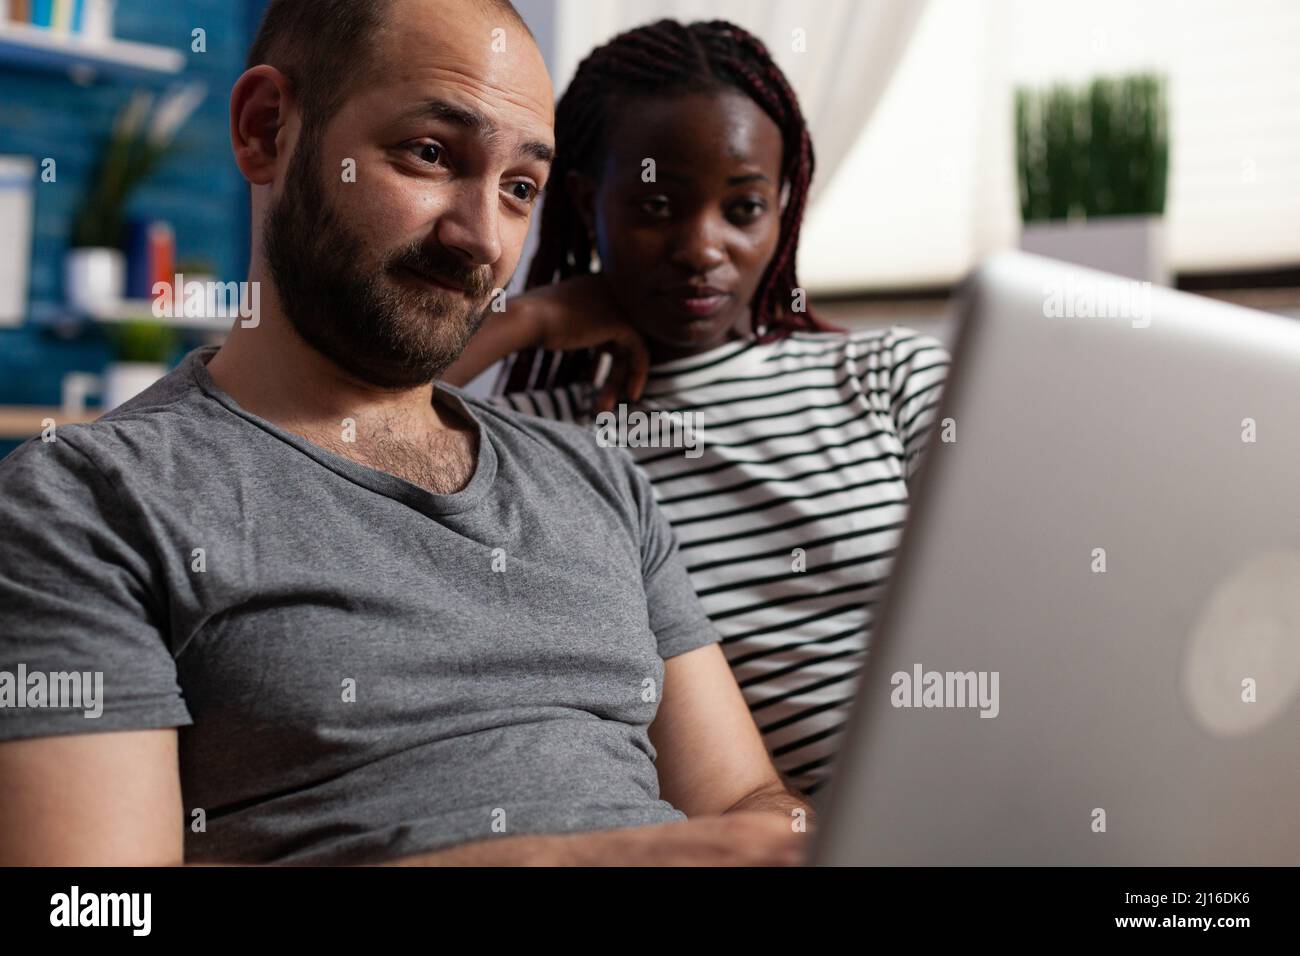 Junge Erwachsene interracial paar Blick auf Computer-Bildschirm, während die Überprüfung Social-Network-Feed. Menschen surfen auf einem modernen Laptop, während sie zusammen auf dem Sofa im Wohnzimmer zu Hause sitzen Stockfoto